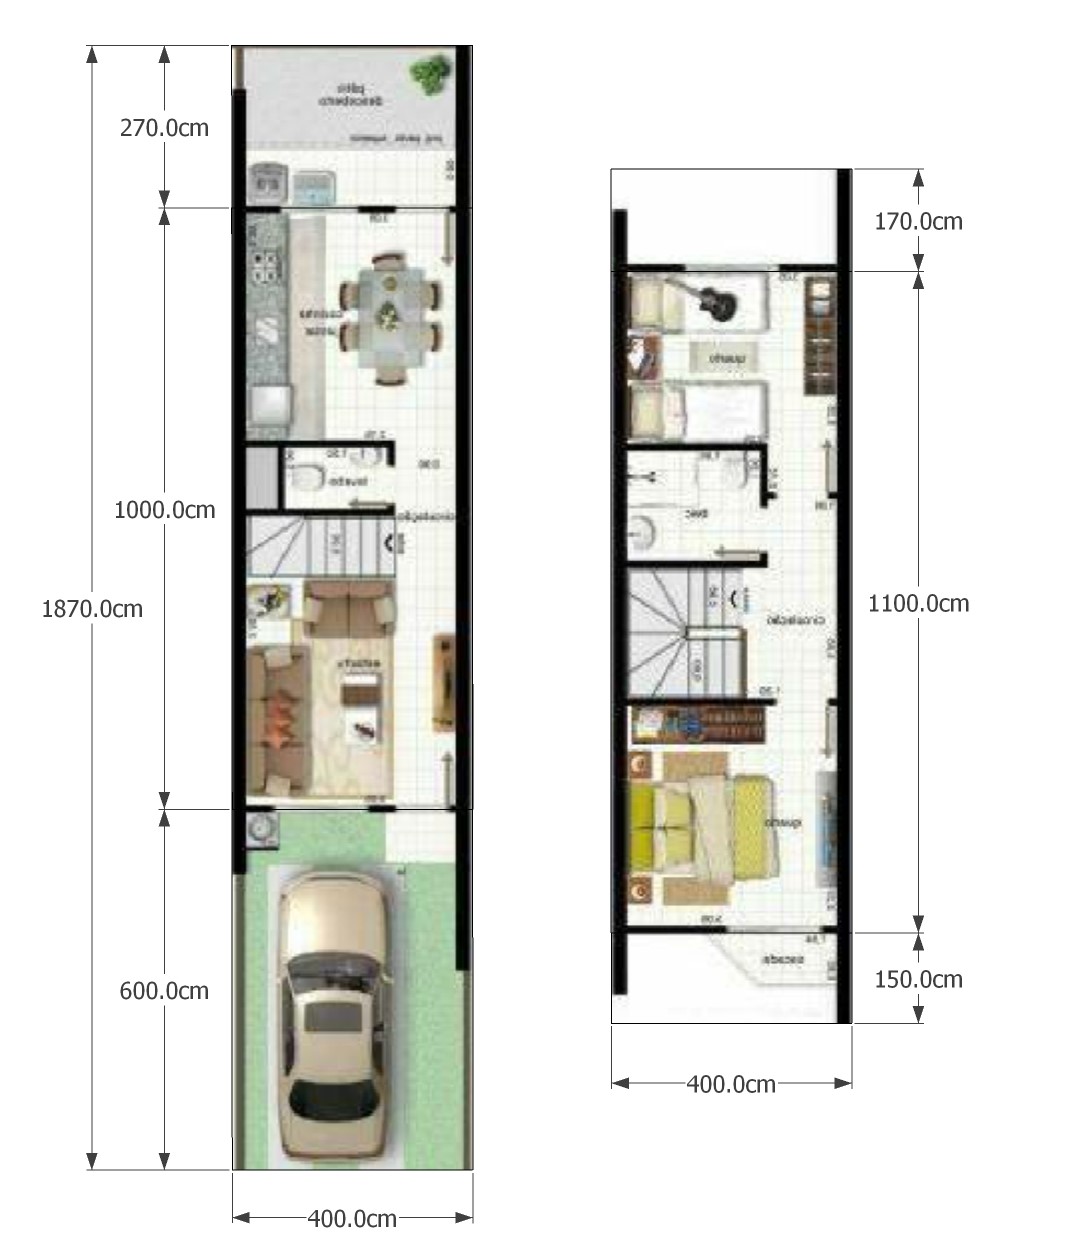 Denah Rumah Minimalis Lebar 4 Meter Beserta Anggaran Biaya